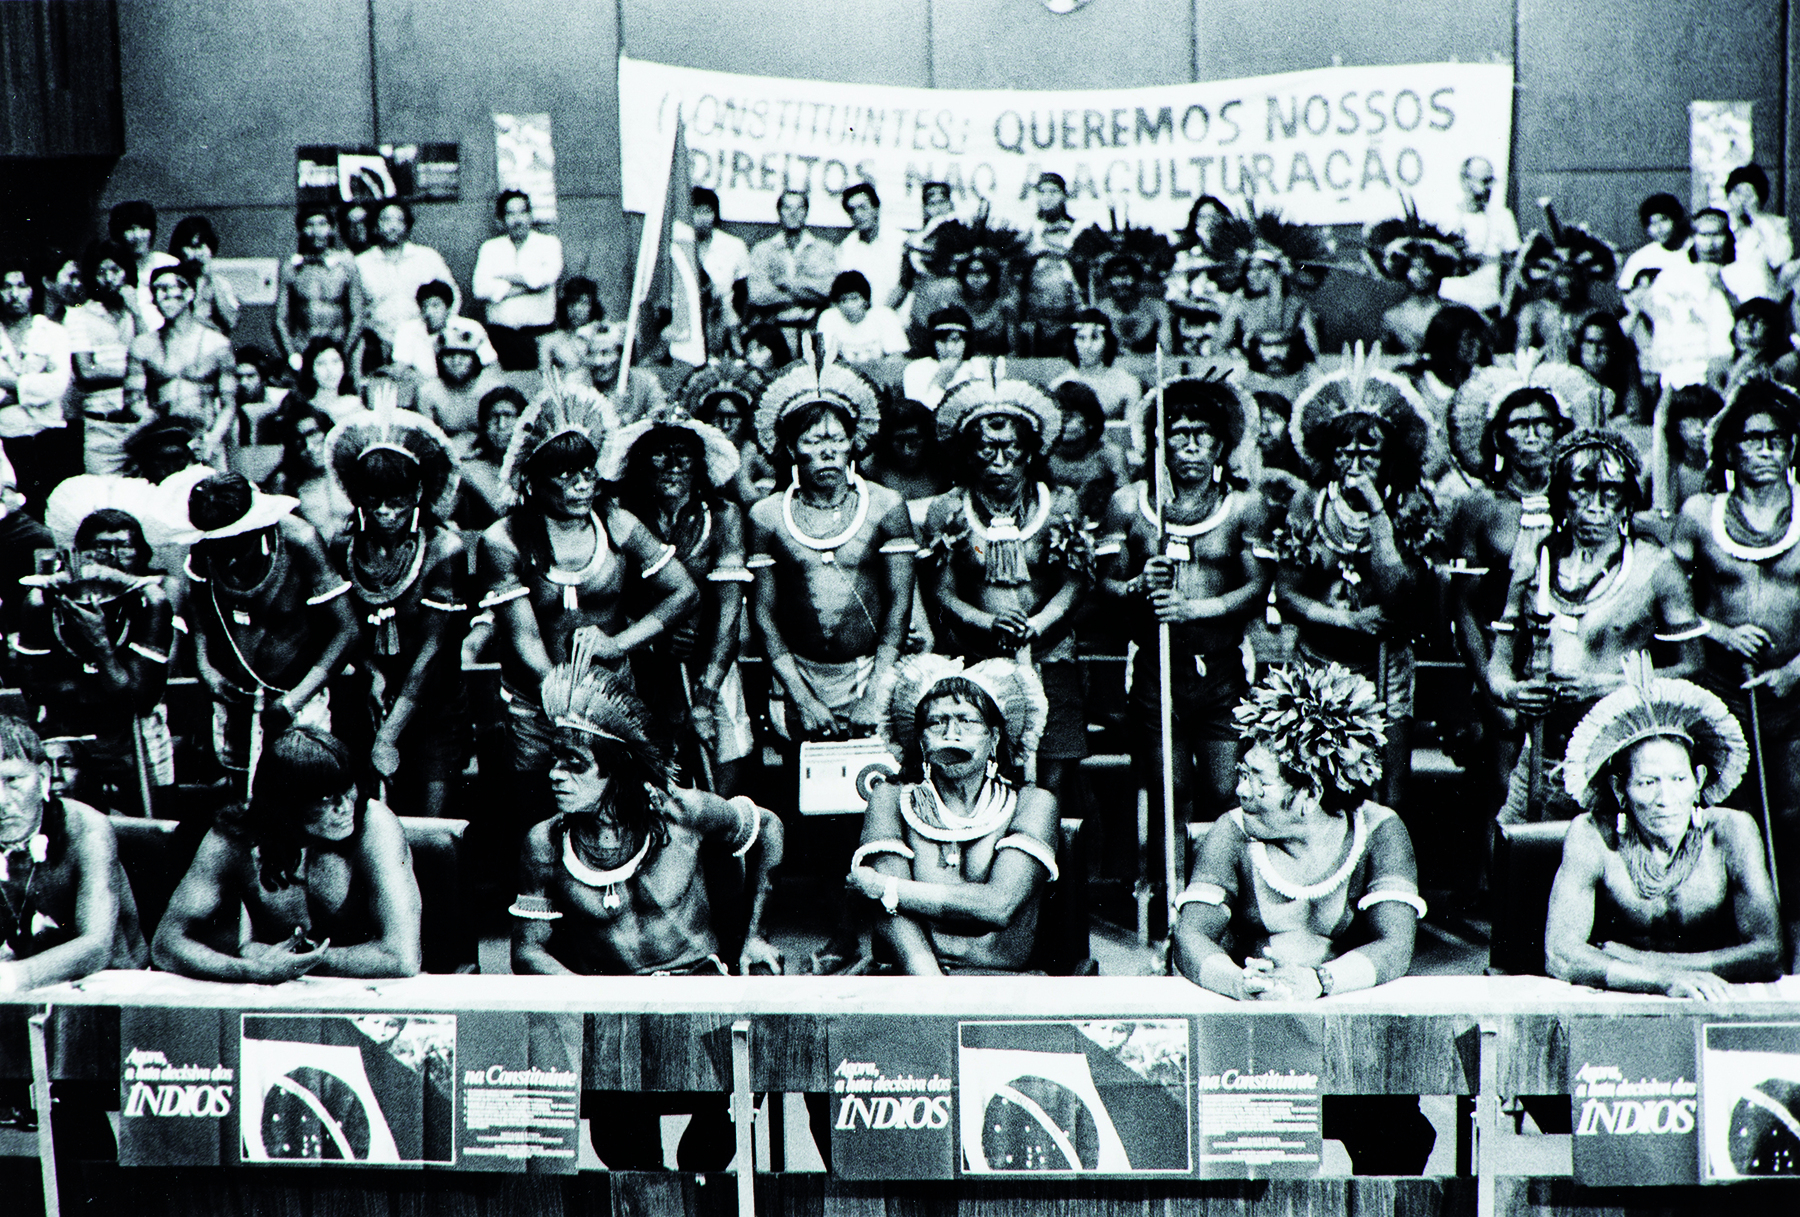 Fotografia em preto e branco. Vários indígenas reunidos em um espaço fechado. Em primeiro plano, alguns deles estão sentados atrás de uma bancada que leva a bandeira do Brasil. Ao fundo muitos indígenas em pé, de frente para o ângulo da fotografia. Ao fundo, uma faixa com os dizeres: 'CONSTITUINTES: QUEREMOS NOSSOS DIREITOS. NÃO À ACULTURAÇÃO'.